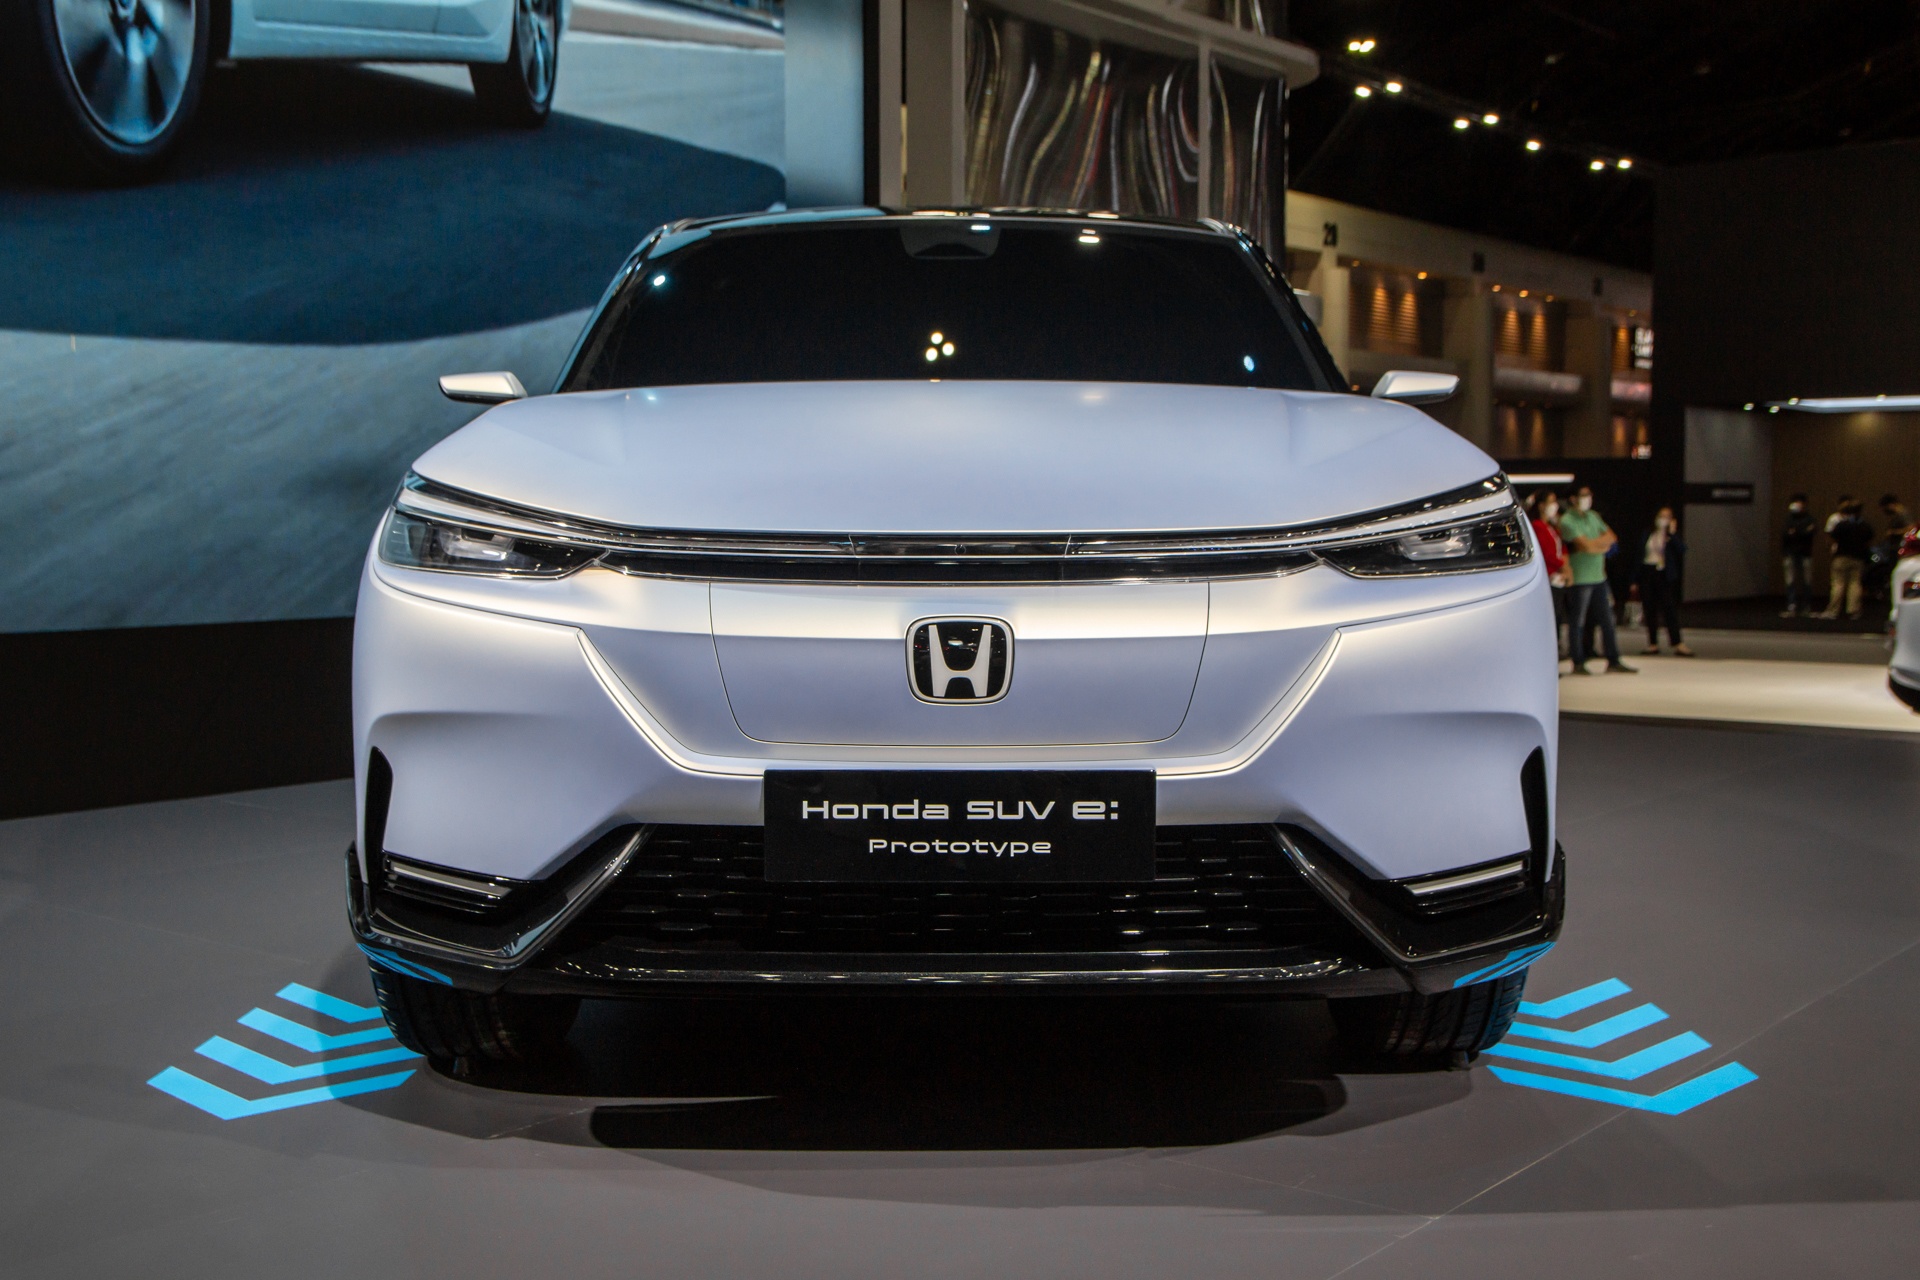 Honda SUV e:Prototype lần đầu được ra mắt tại Đông Nam Á - ảnh 2